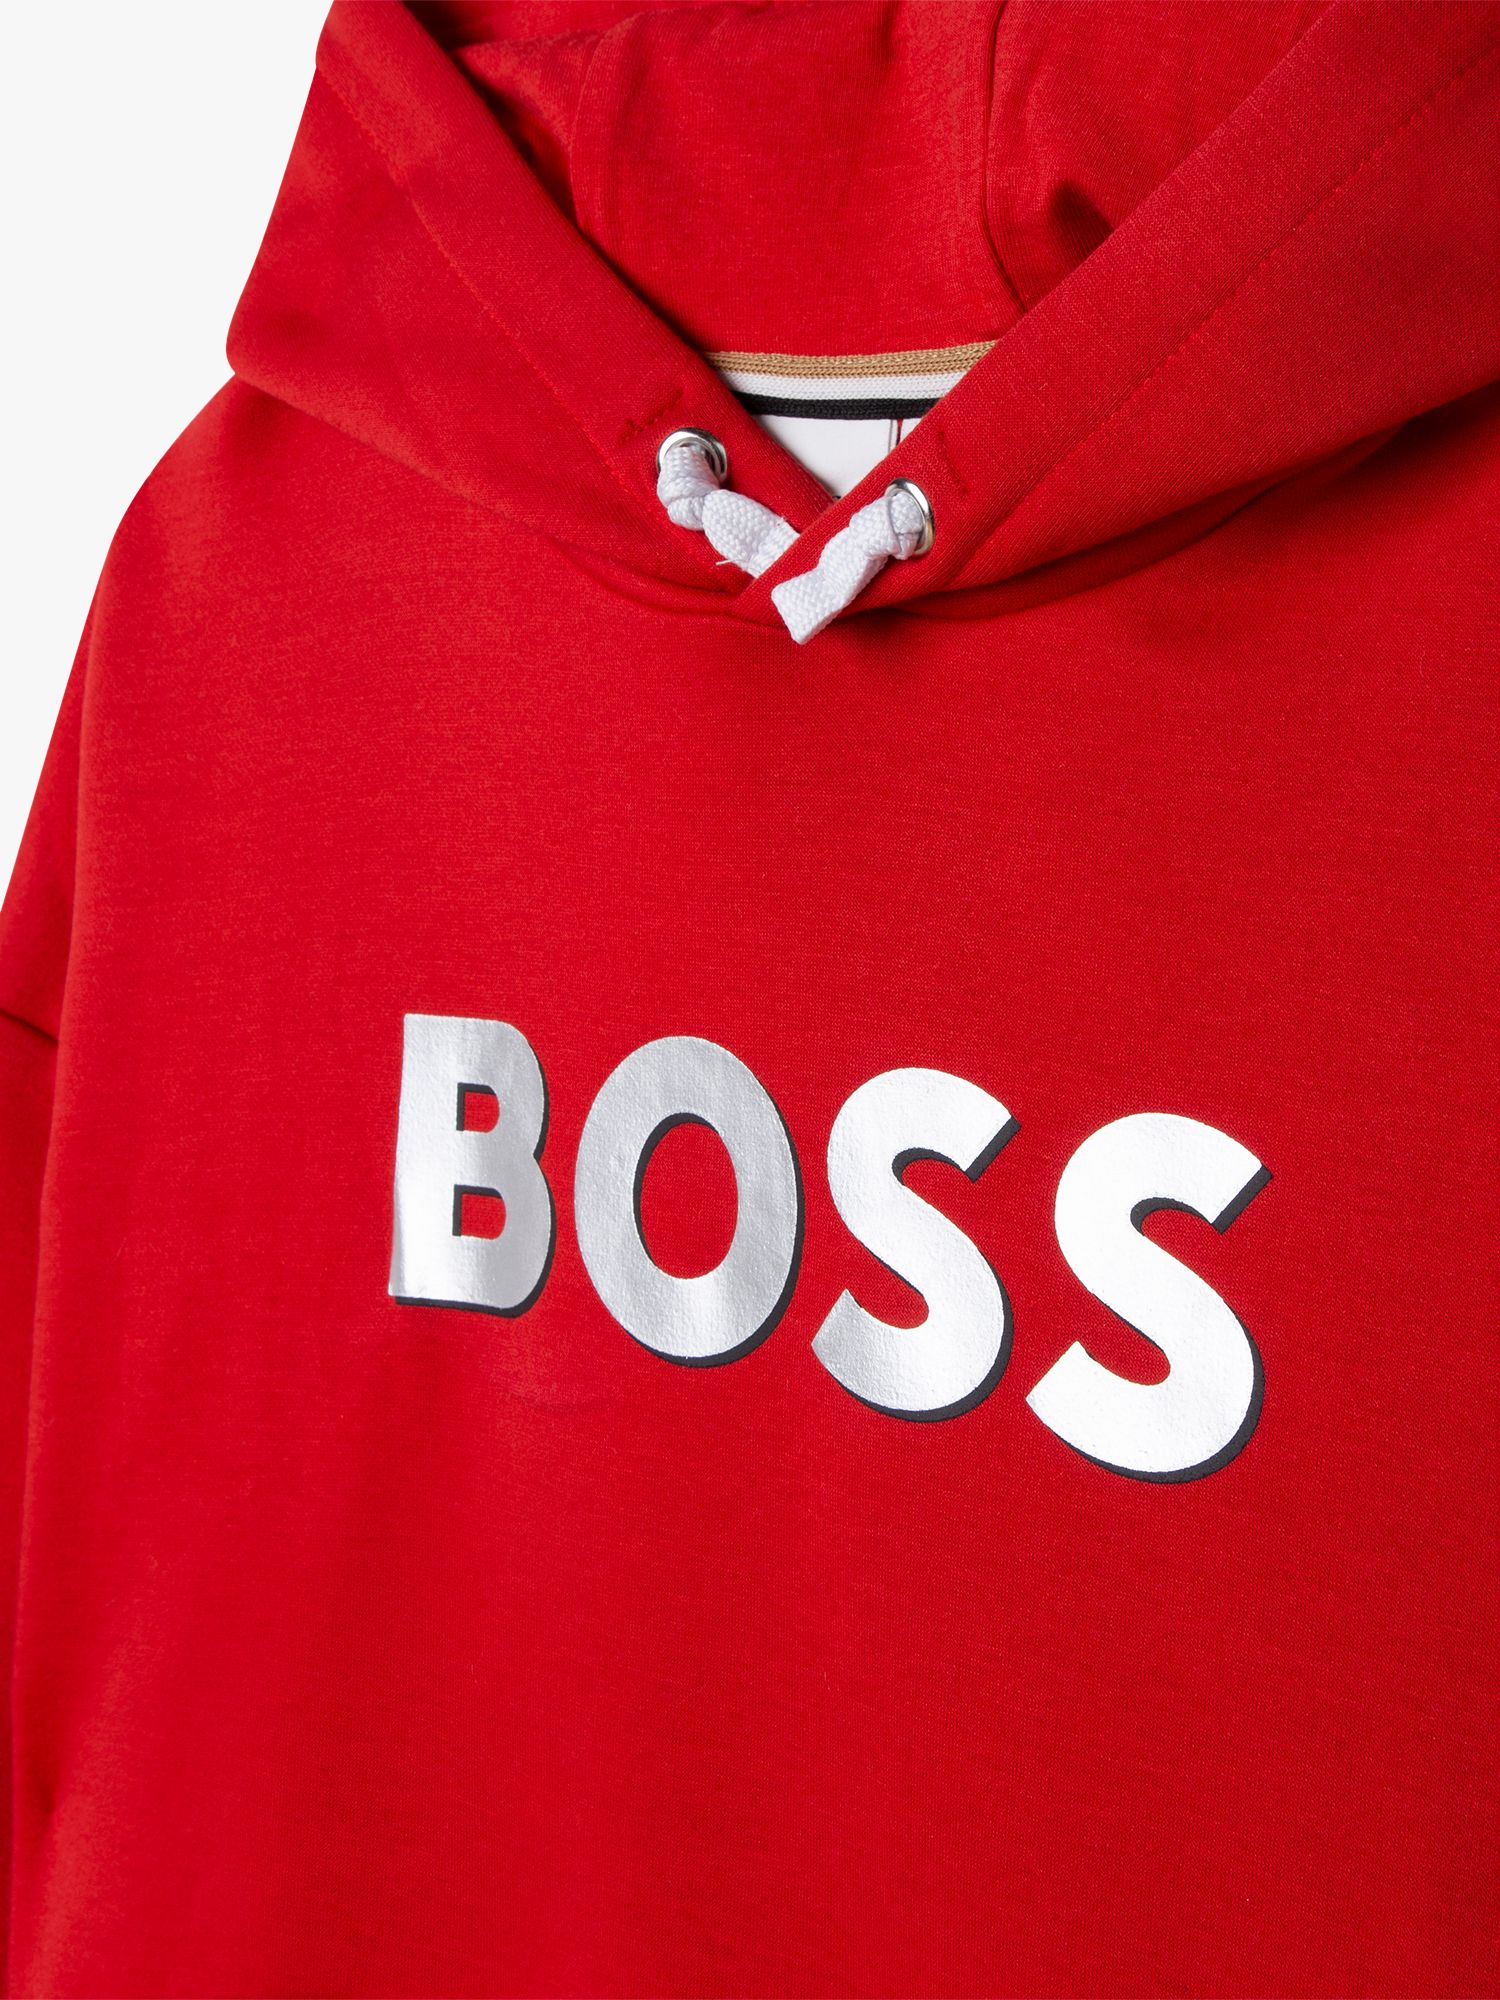 HUGO BOSS Kids' Logo Hooded Dress, Red Crimson, 4 years